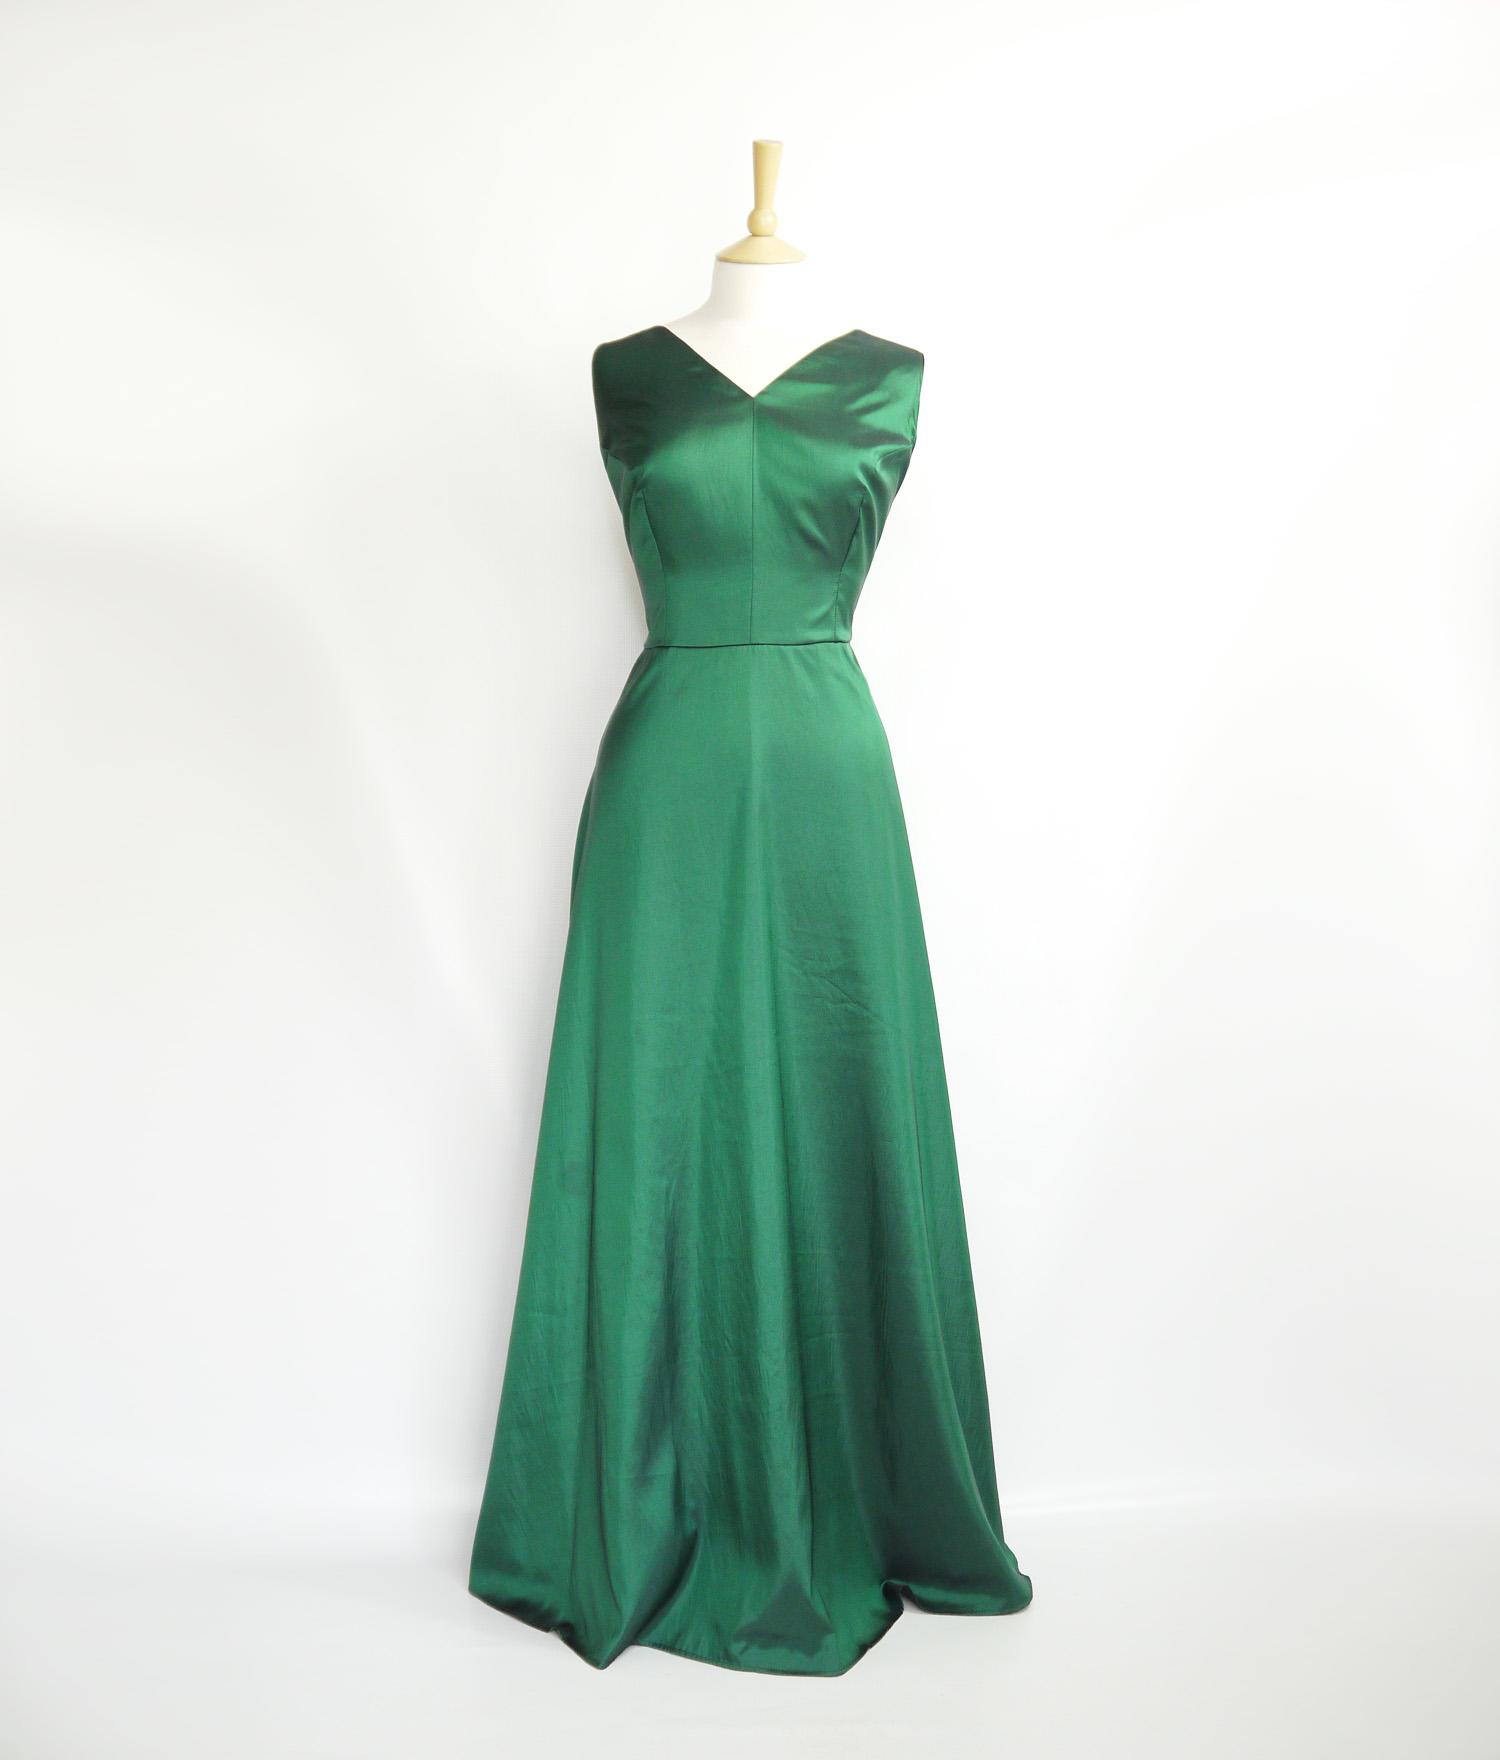 Size UK 20 - Emerald Green Taffeta V-Neckline Full Length Dress